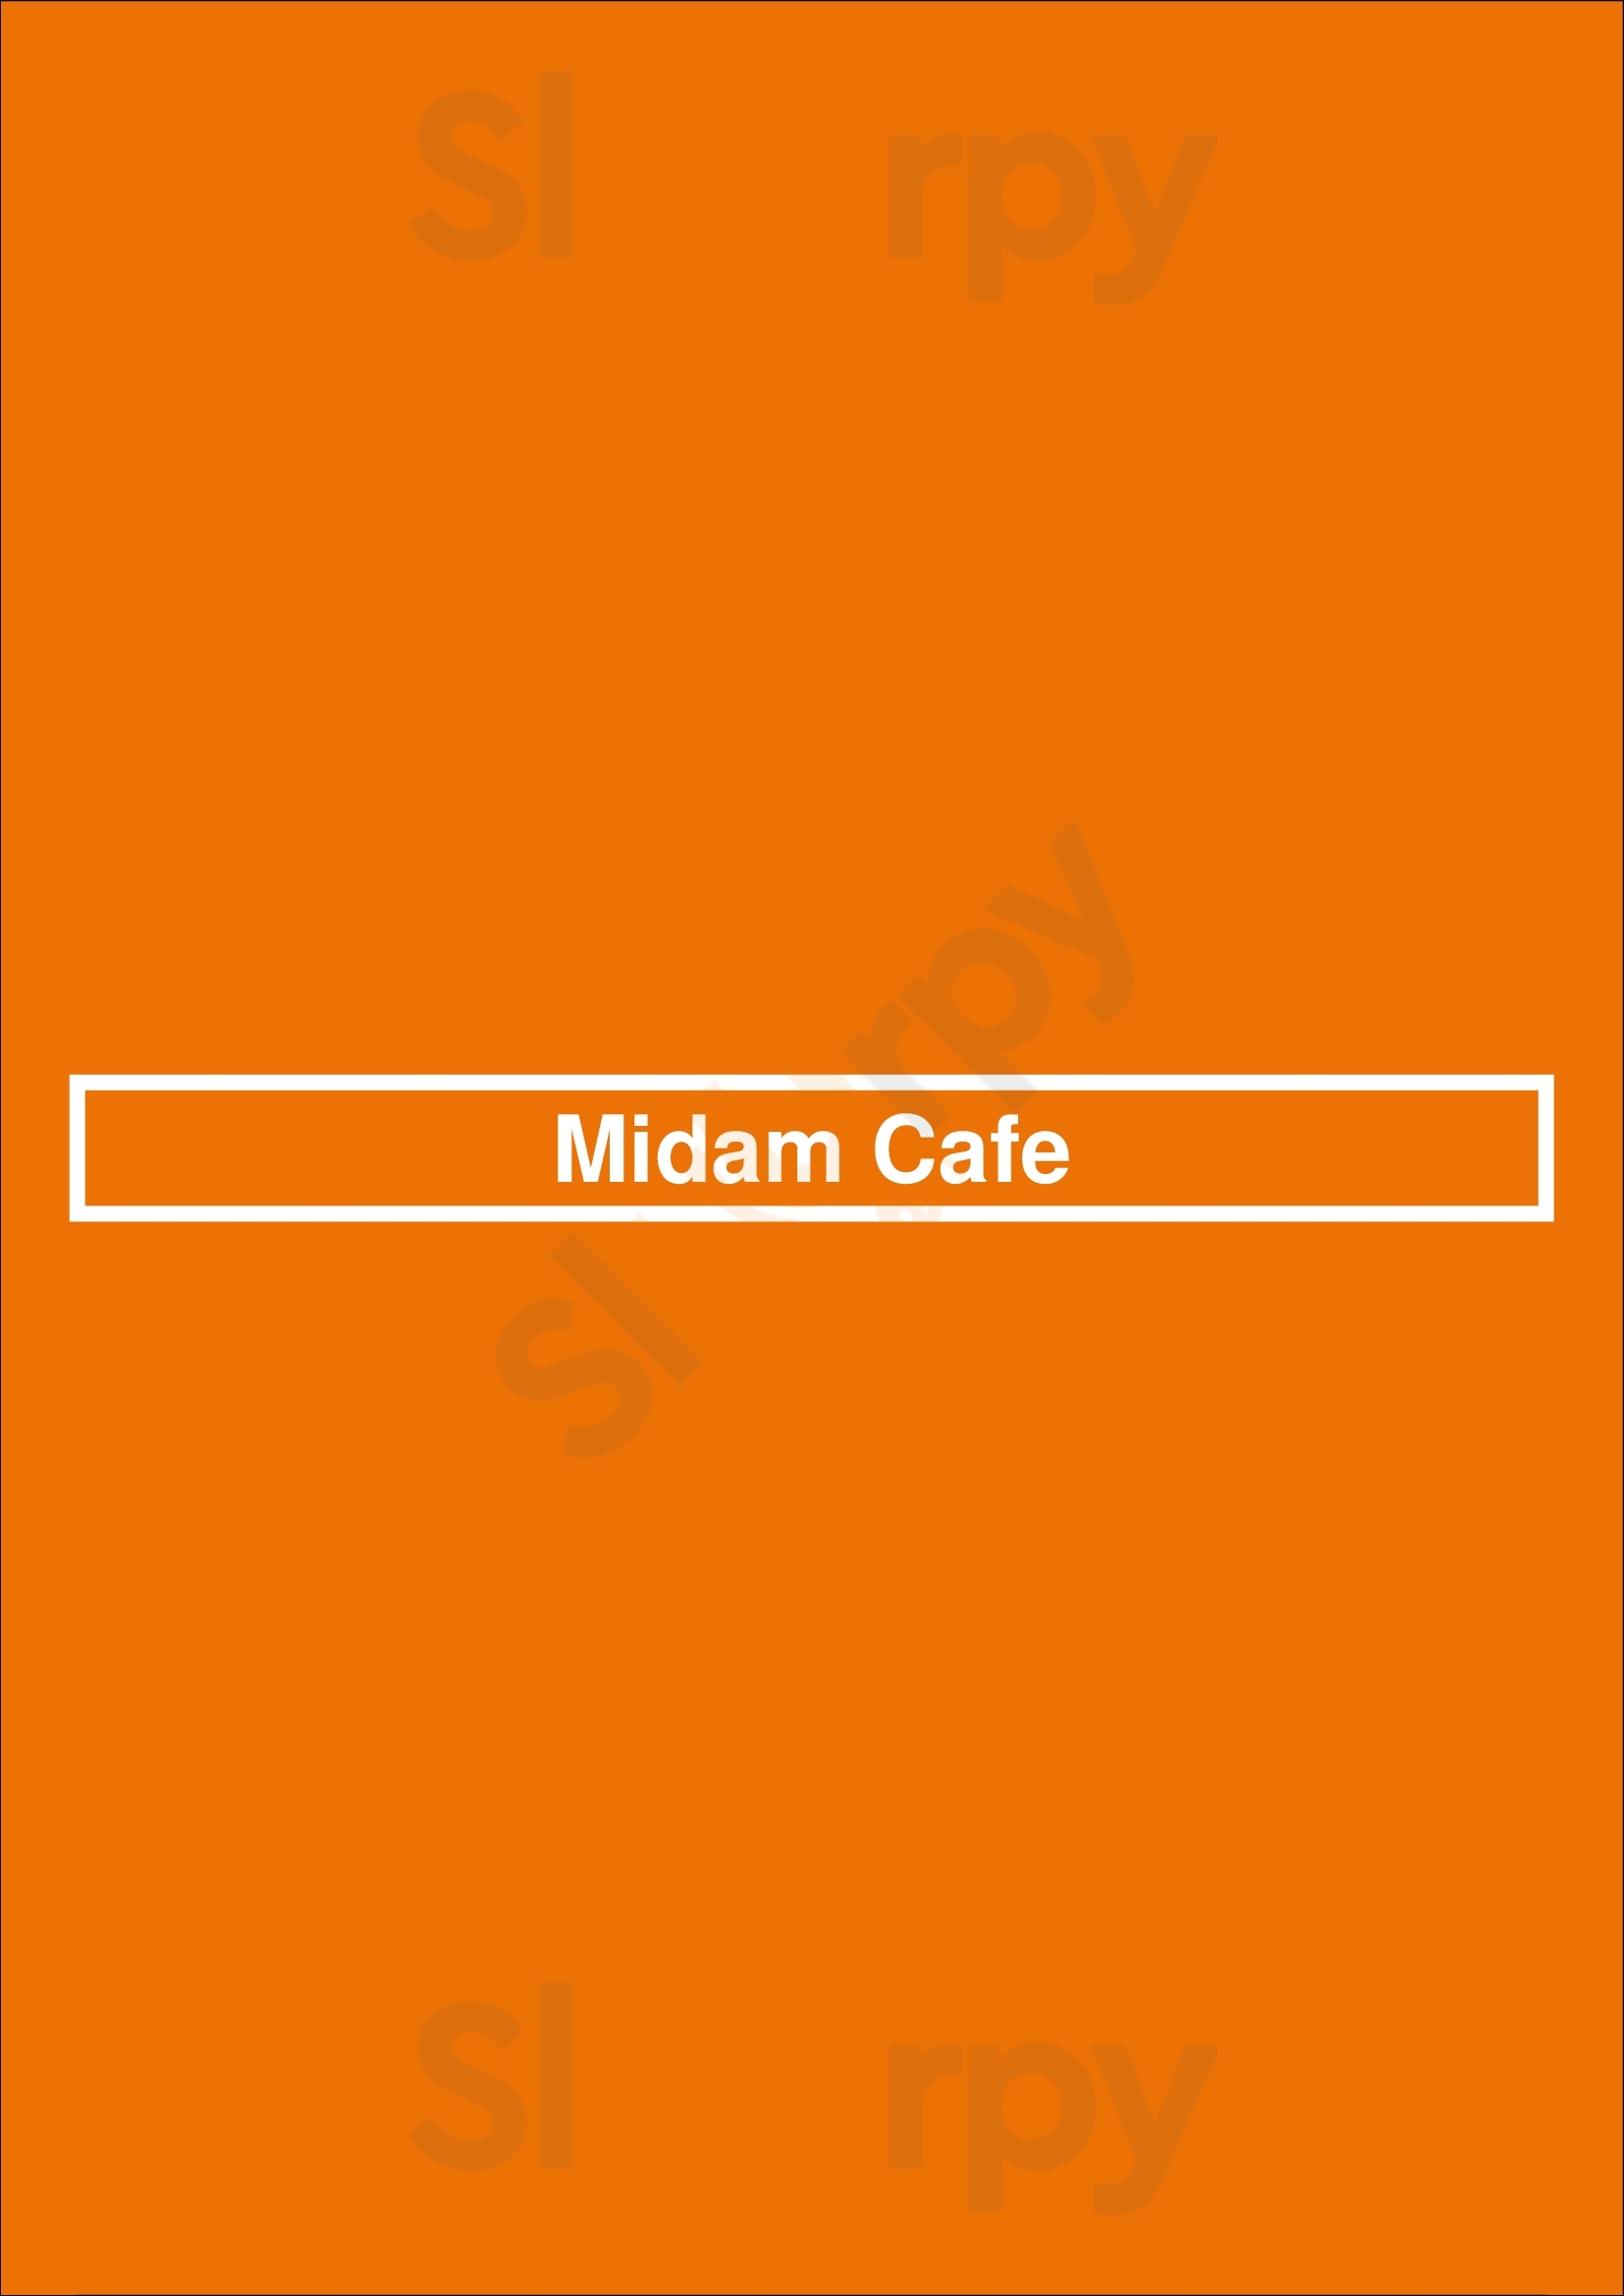 Midam Cafe Burnaby Menu - 1